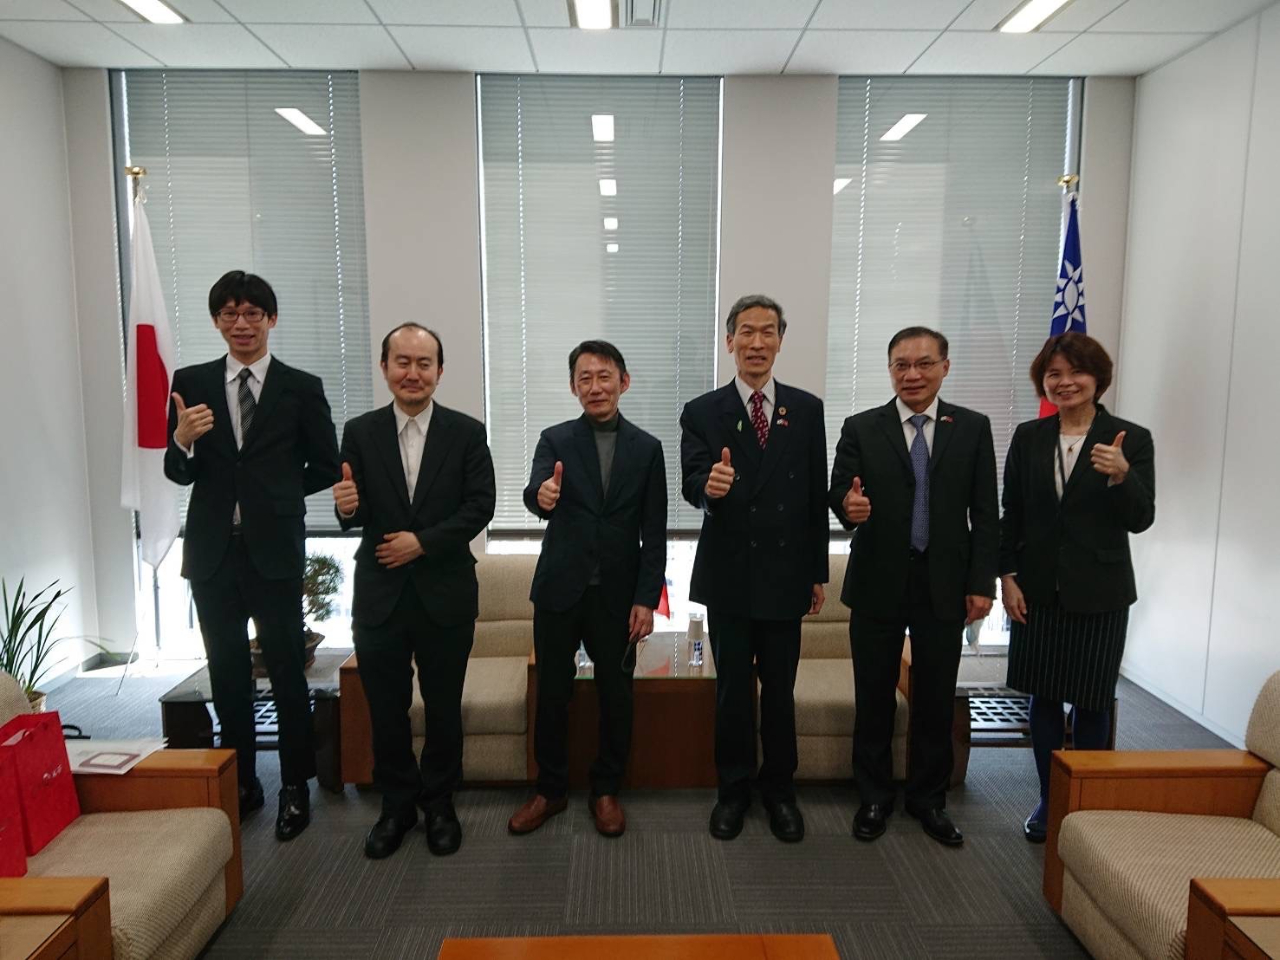 左至右:、吳秘書、吉田博士、塚原博士、向處長、張副處長、林秘書